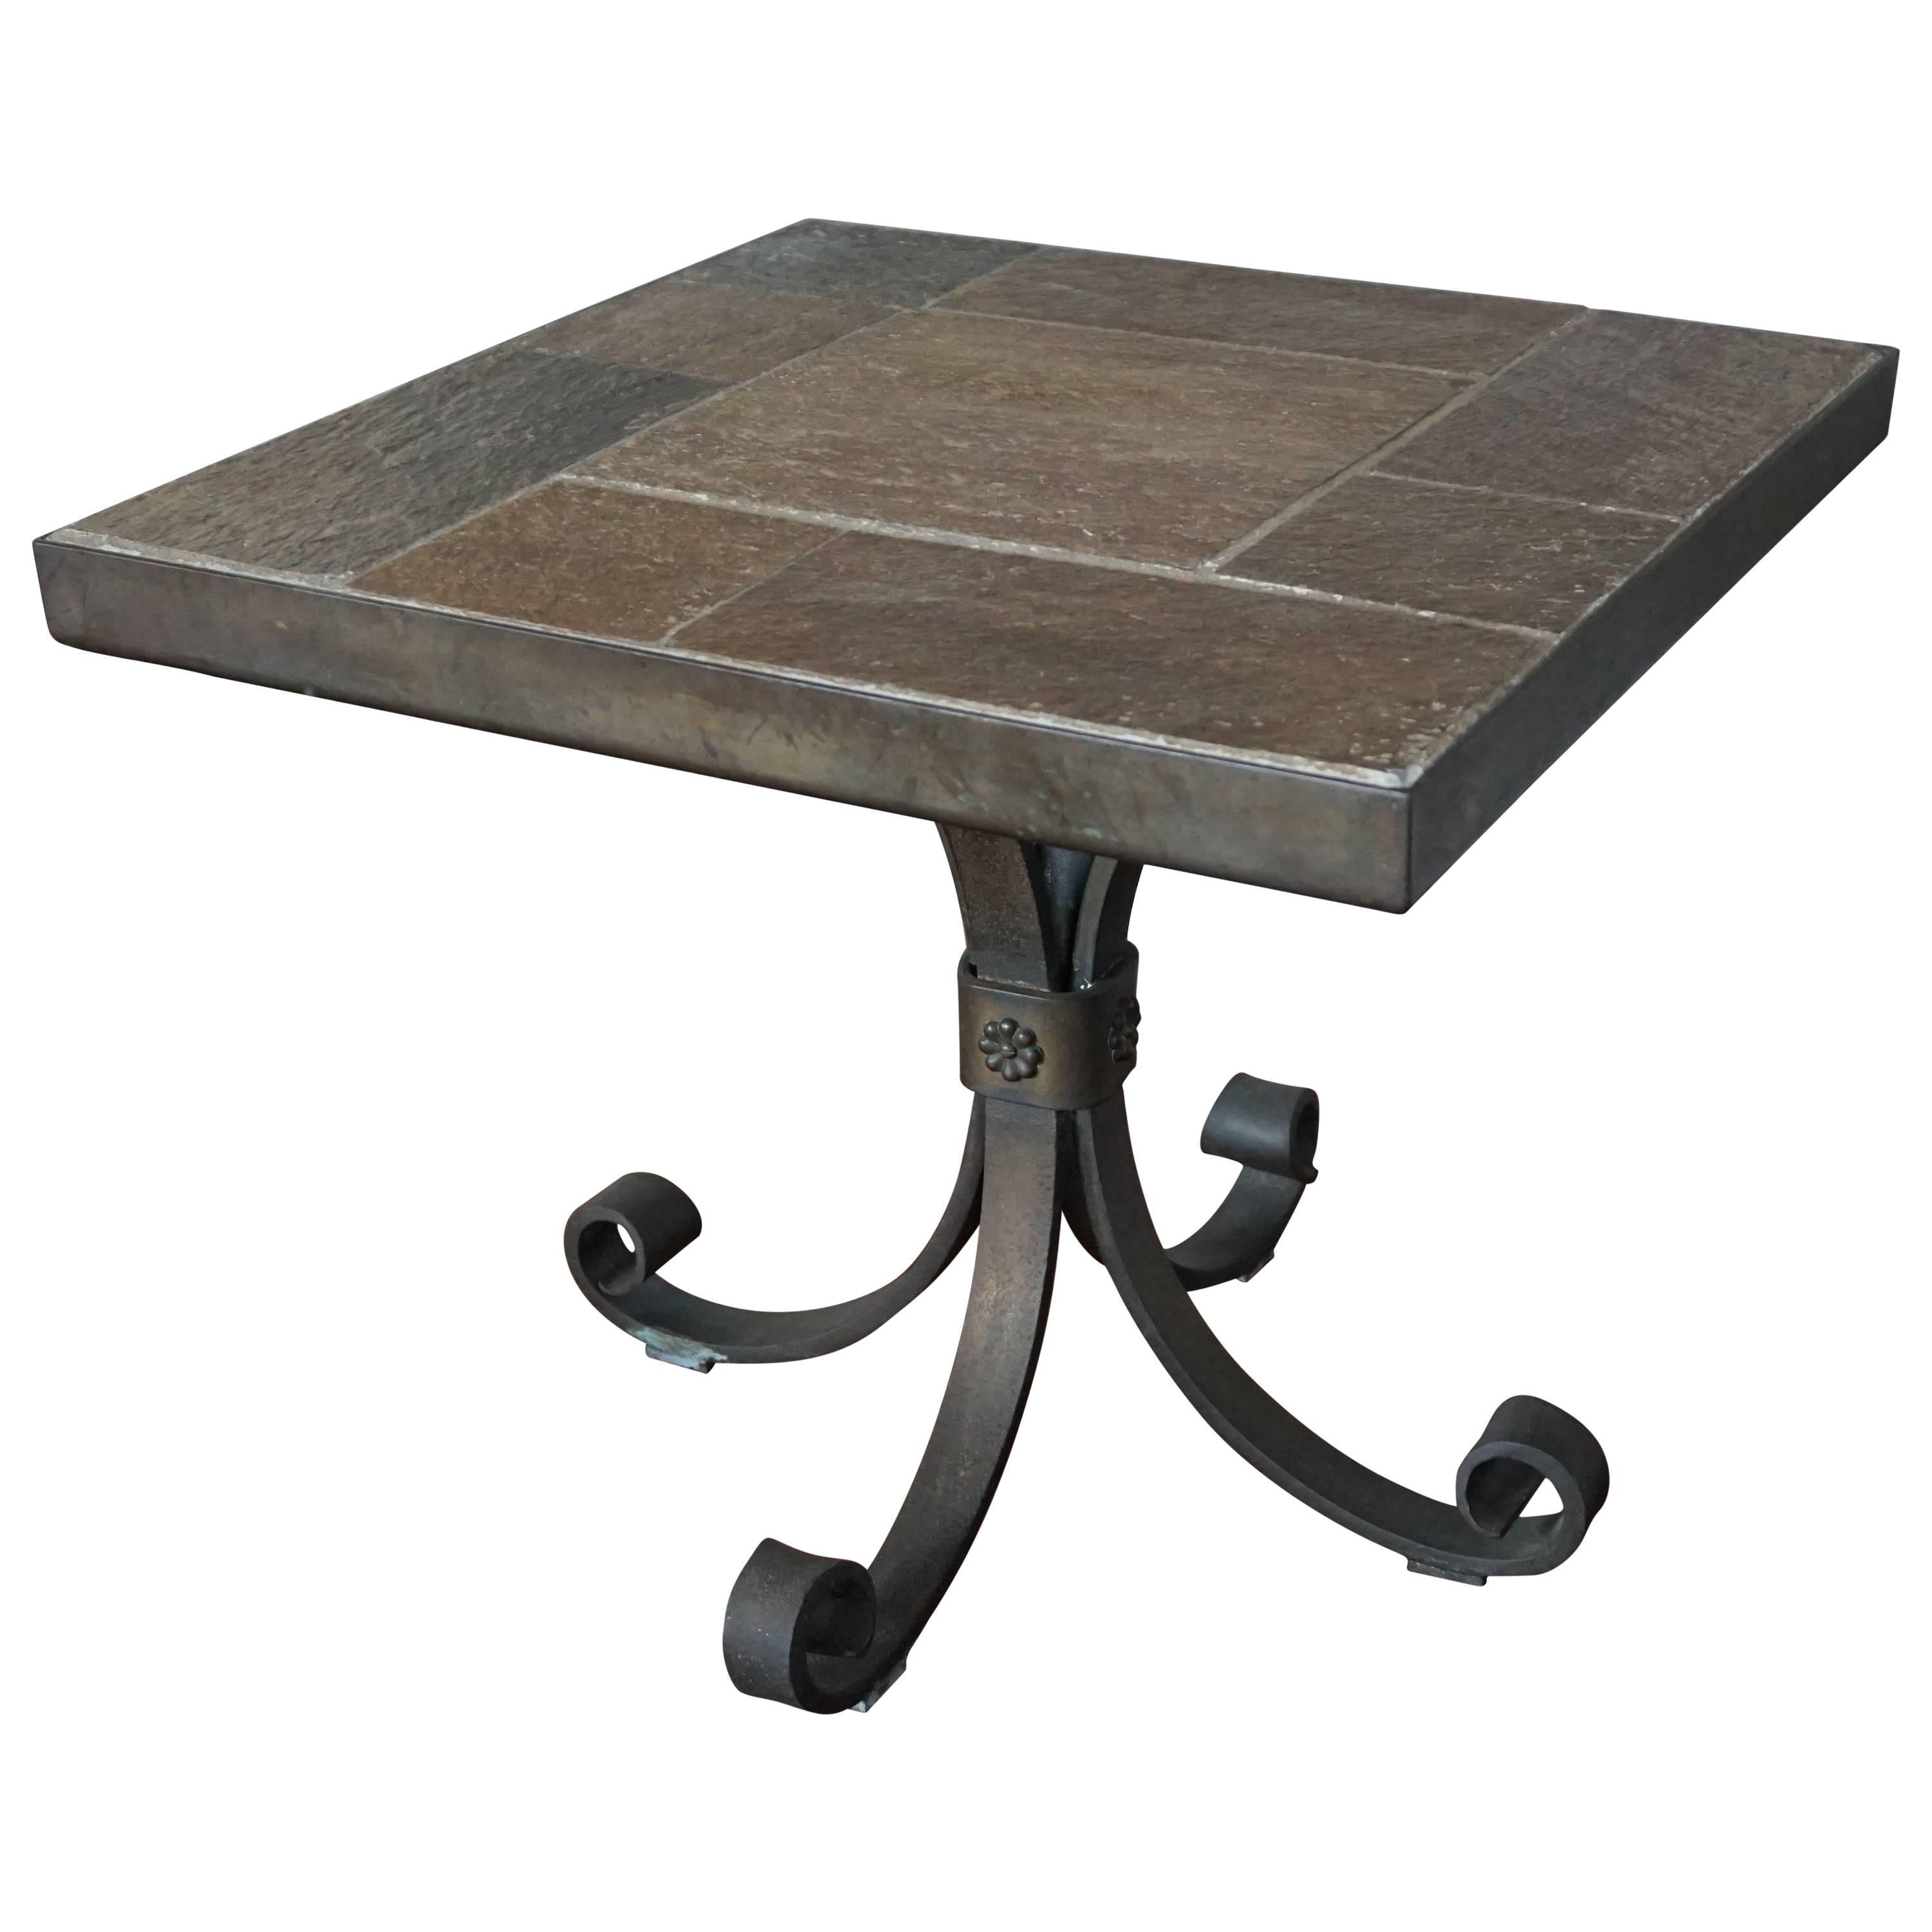 Table d'appoint ou table basse brutaliste unique avec plateau en pierre de ardoise et base en fer forgé